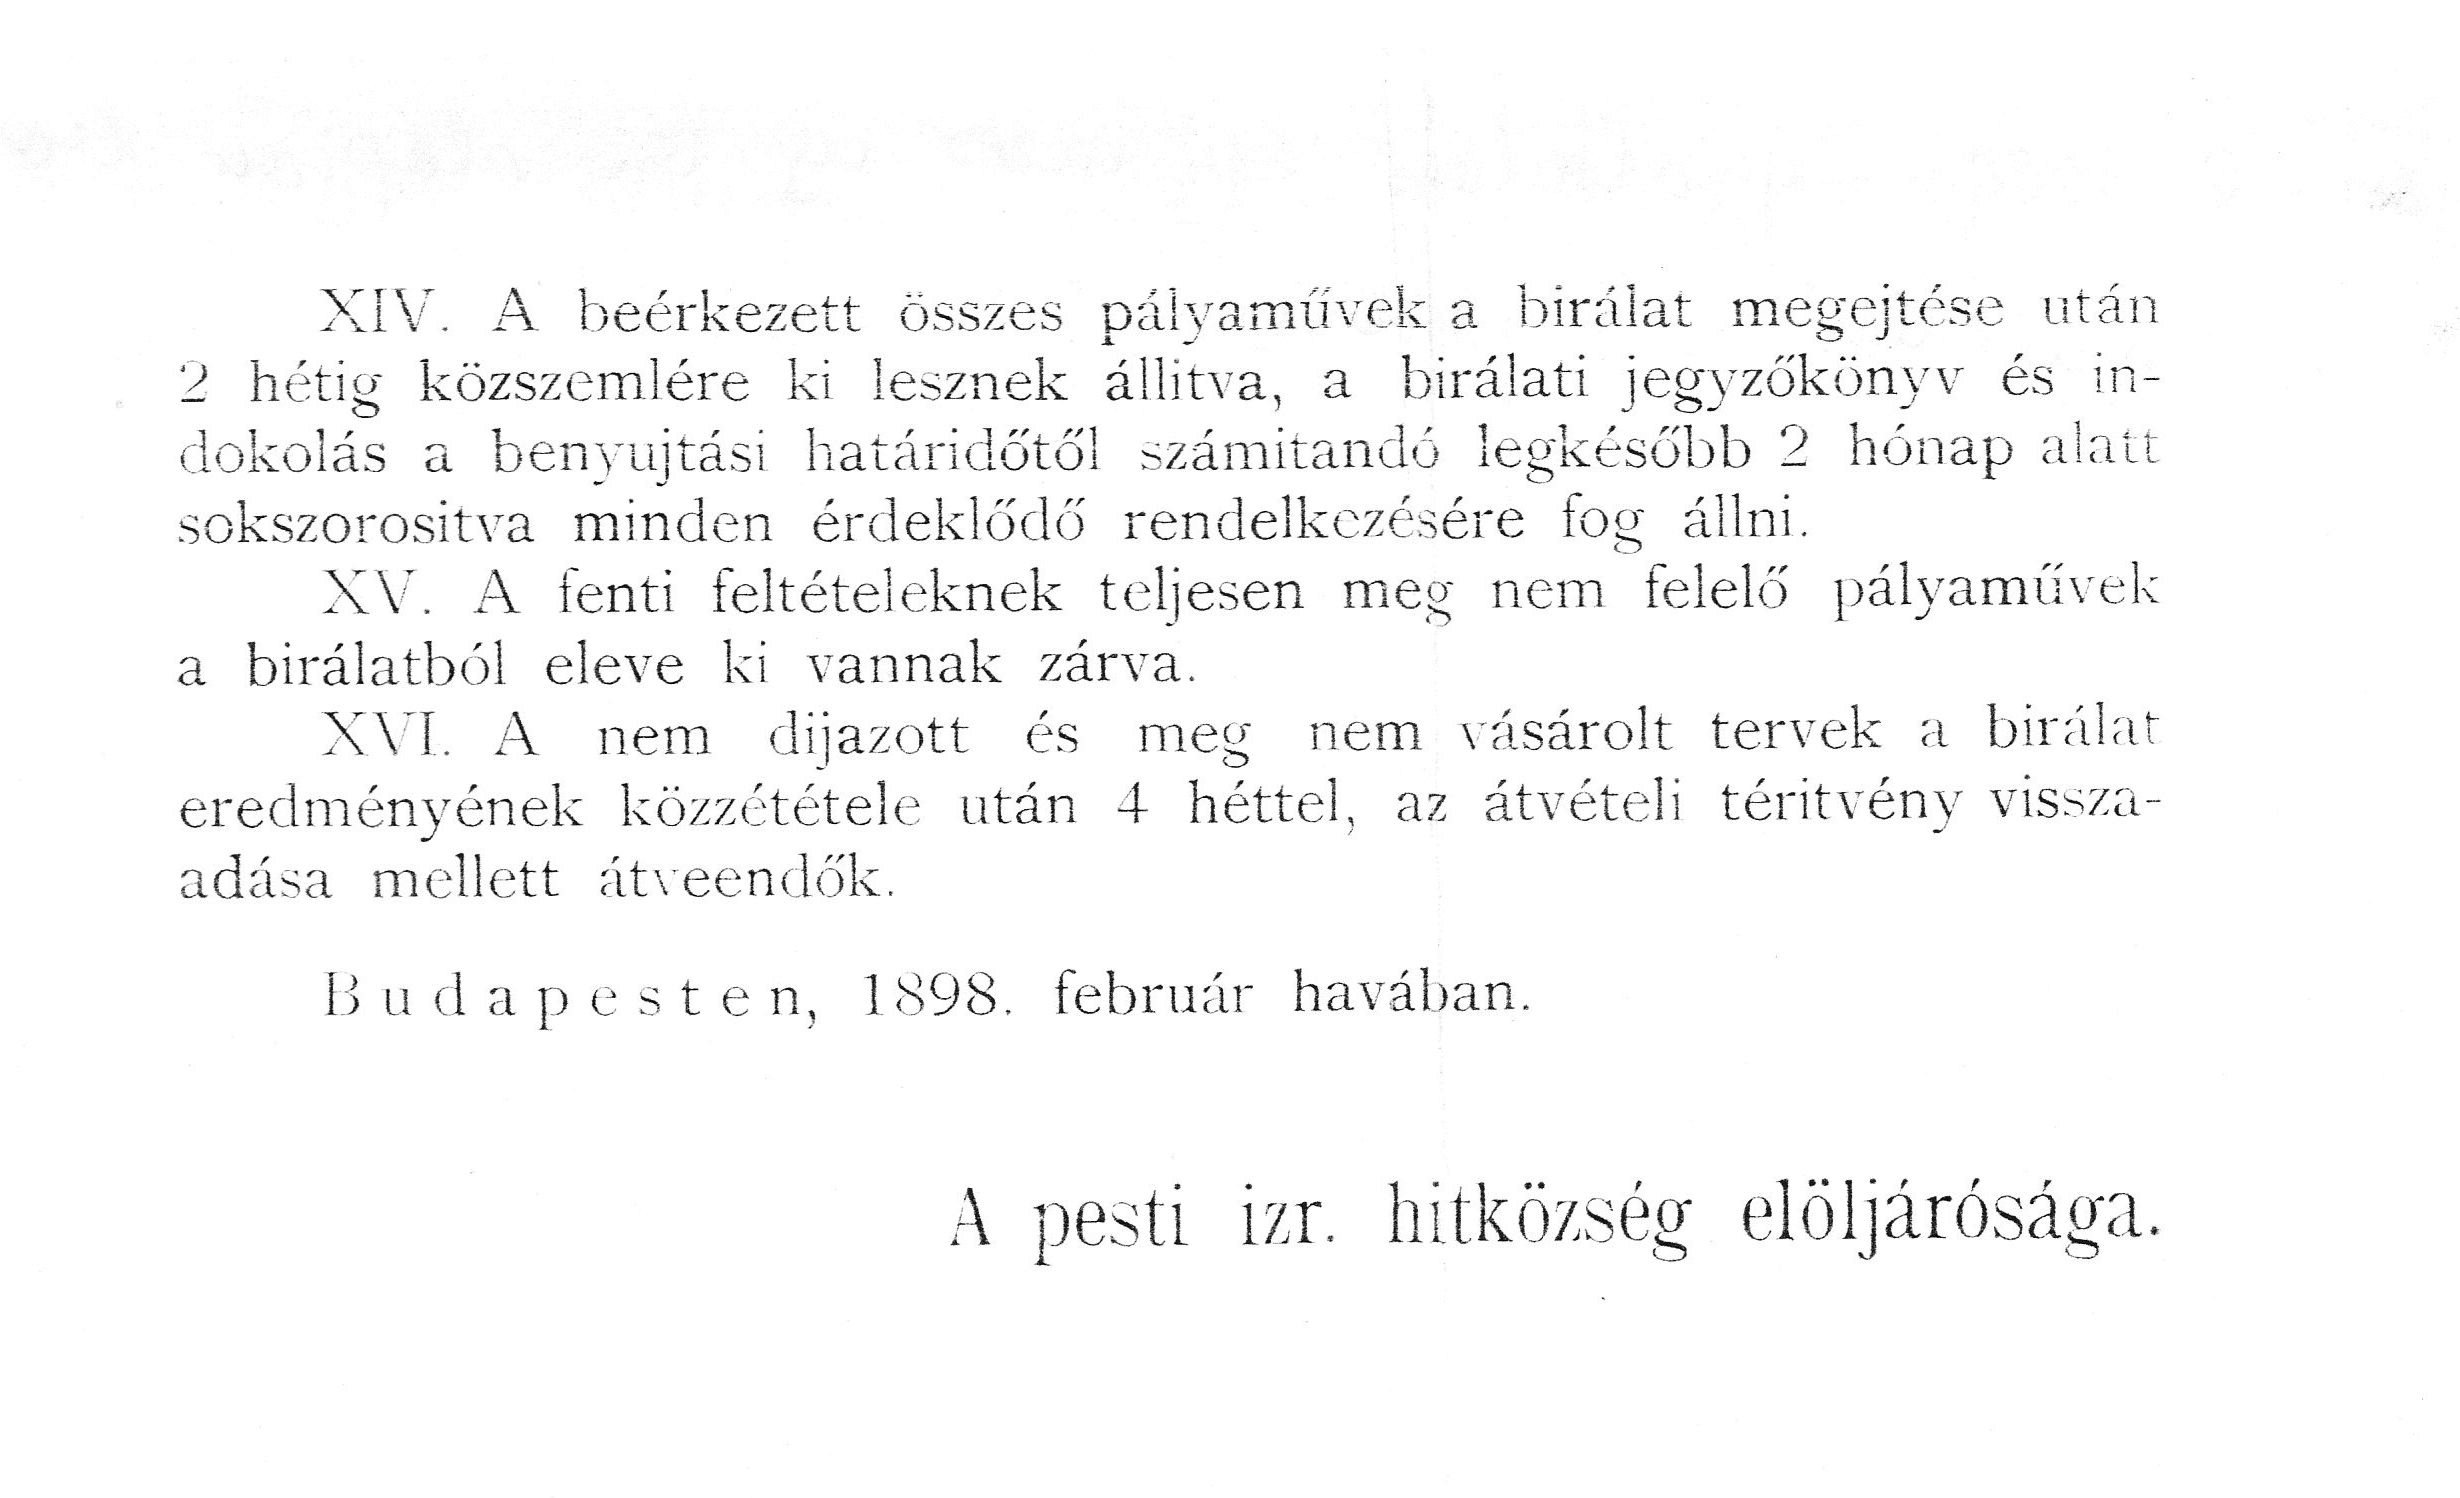 03_BTM Kiscelli Múzeum, Kézirattár, Foerk Ernő hagyatéka, ltsz. n